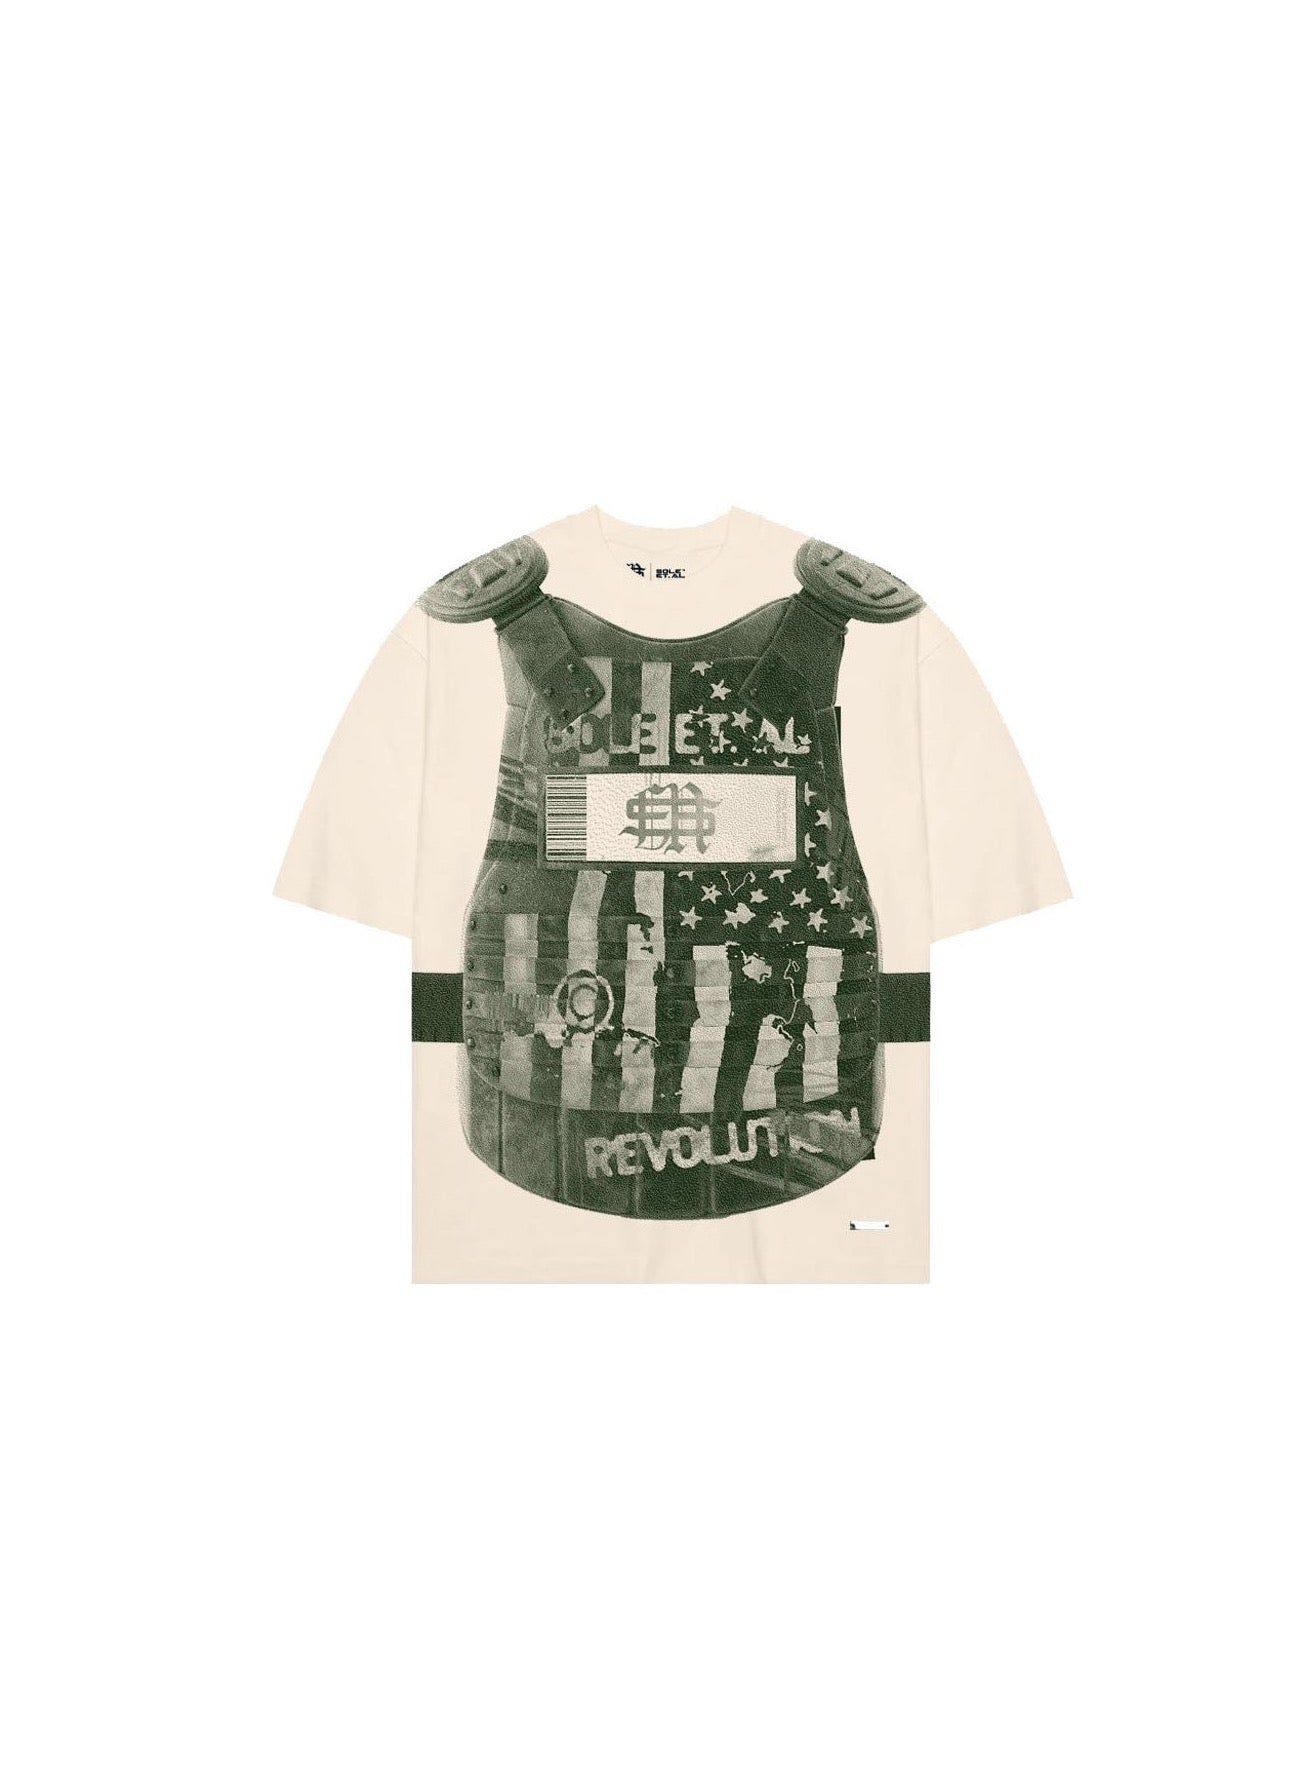 Sole et. Camiseta Al United Revolutionary : Arena / Verde militar